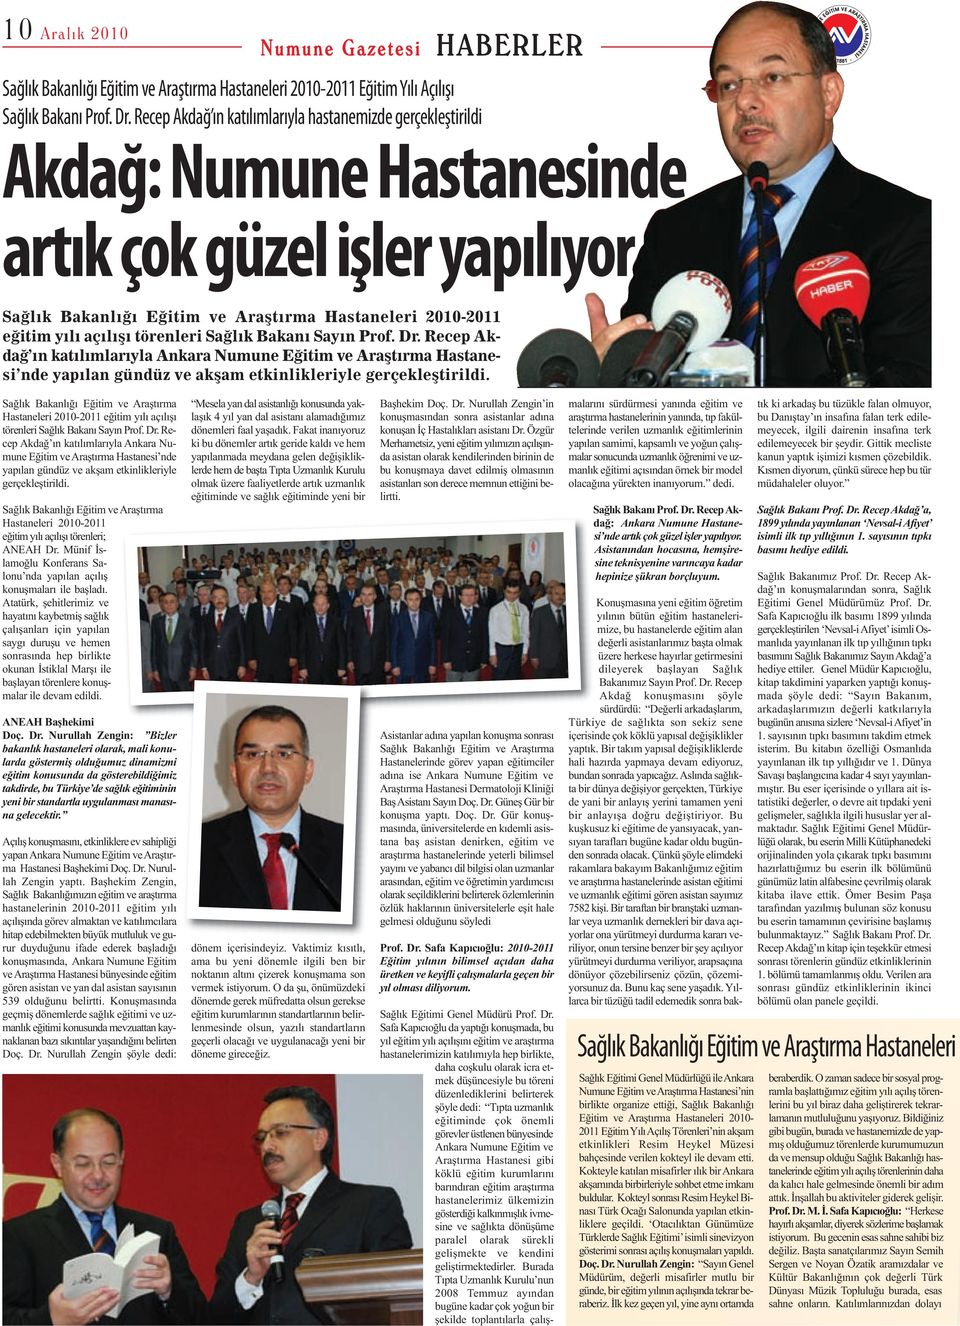 törenleri Sağlık Bakanı Sayın Prof. Dr. Recep Akdağ ın katılımlarıyla Ankara Numune Eğitim ve Araştırma Hastanesi nde yapılan gündüz ve akşam etkinlikleriyle gerçekleştirildi.